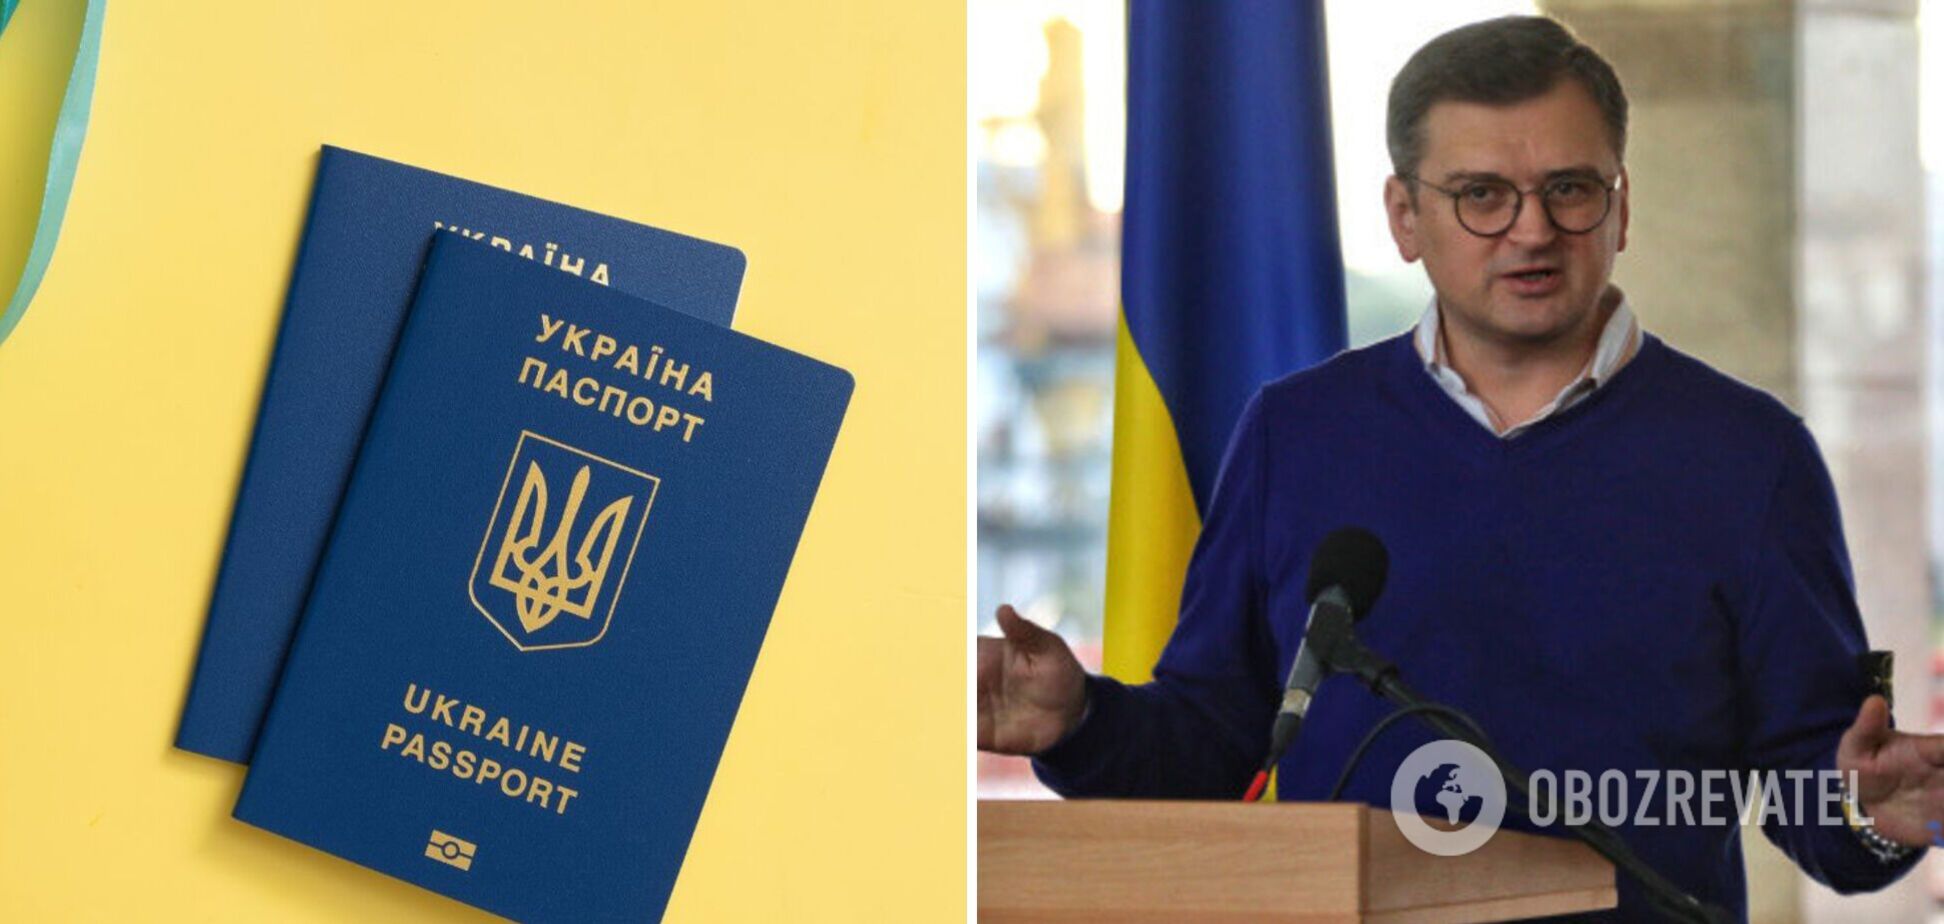 Необхідно зберегти зв'язок емігрантів з Україною: Дмитро Кулеба пояснив, для чого потрібне подвійне громадянство